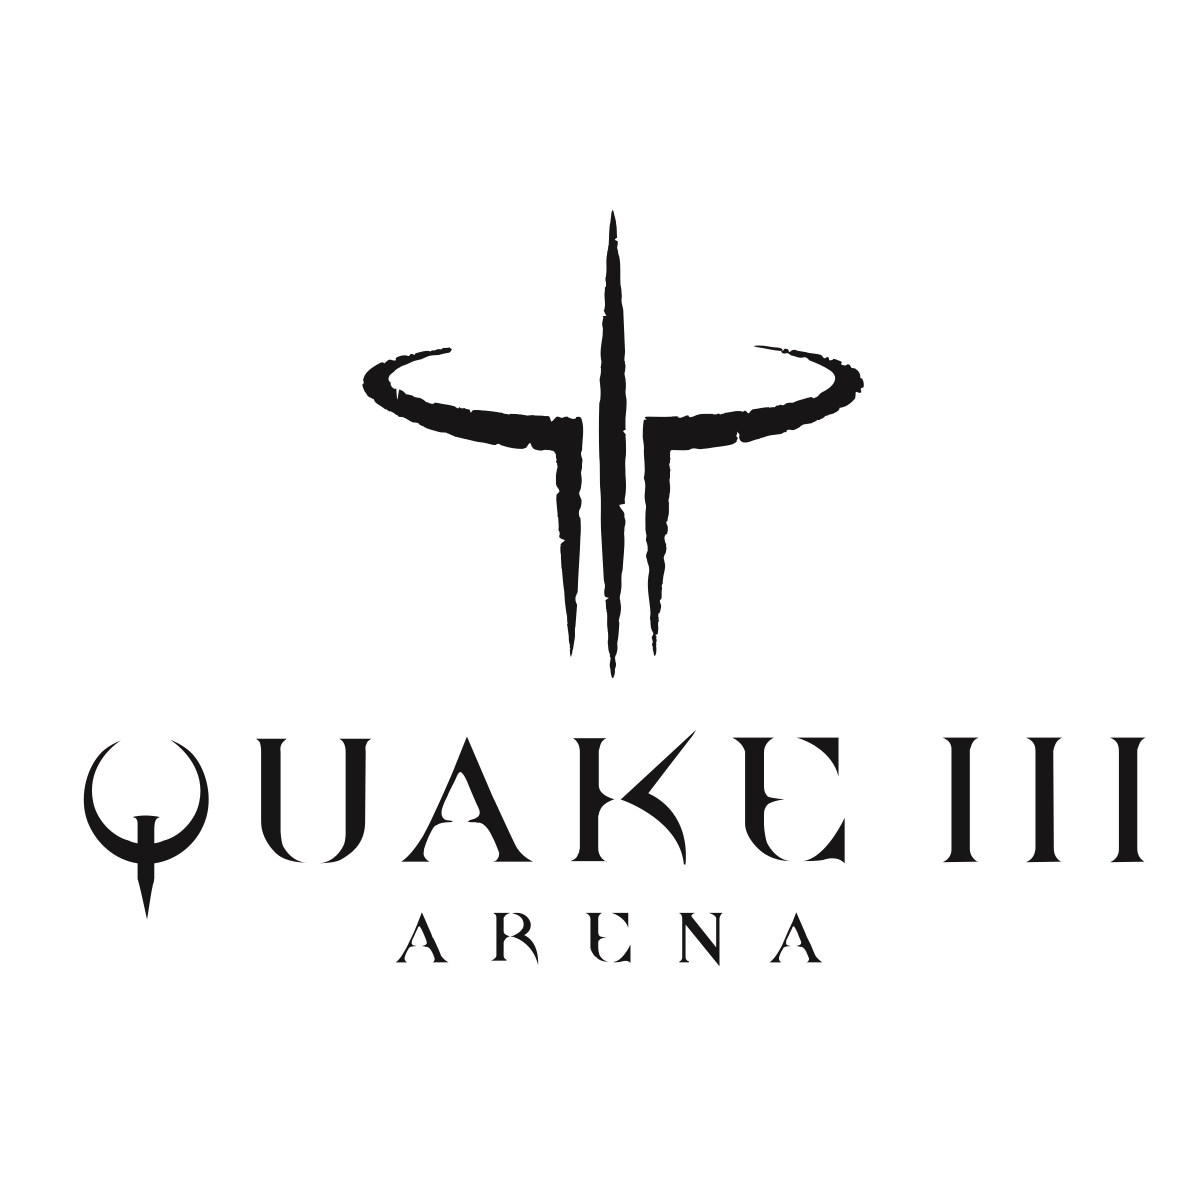 Free quake game download